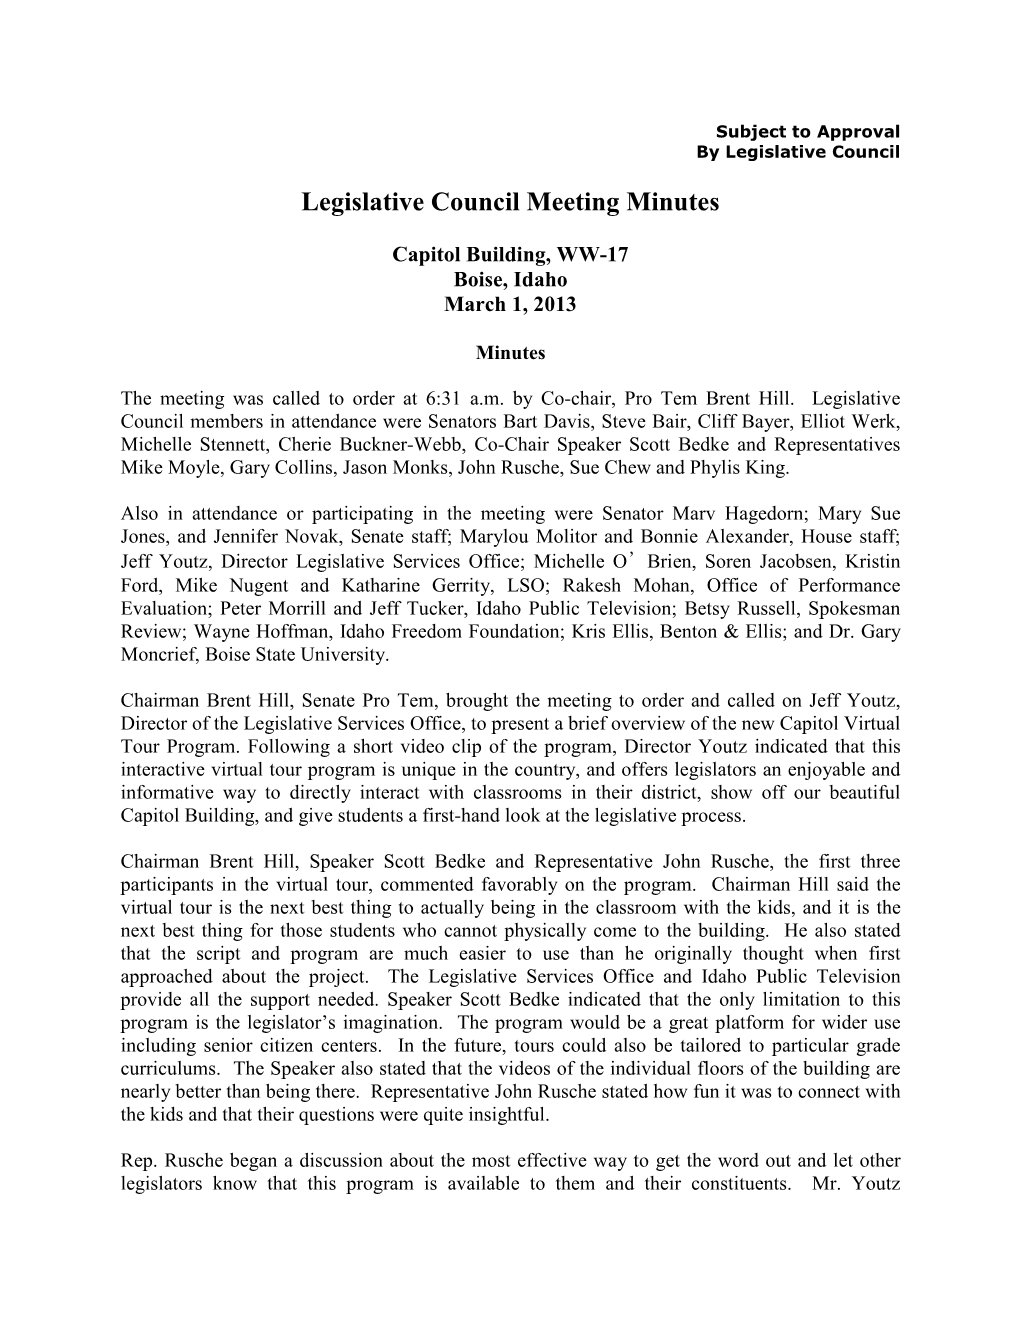 Legislative Council Meeting Minutes